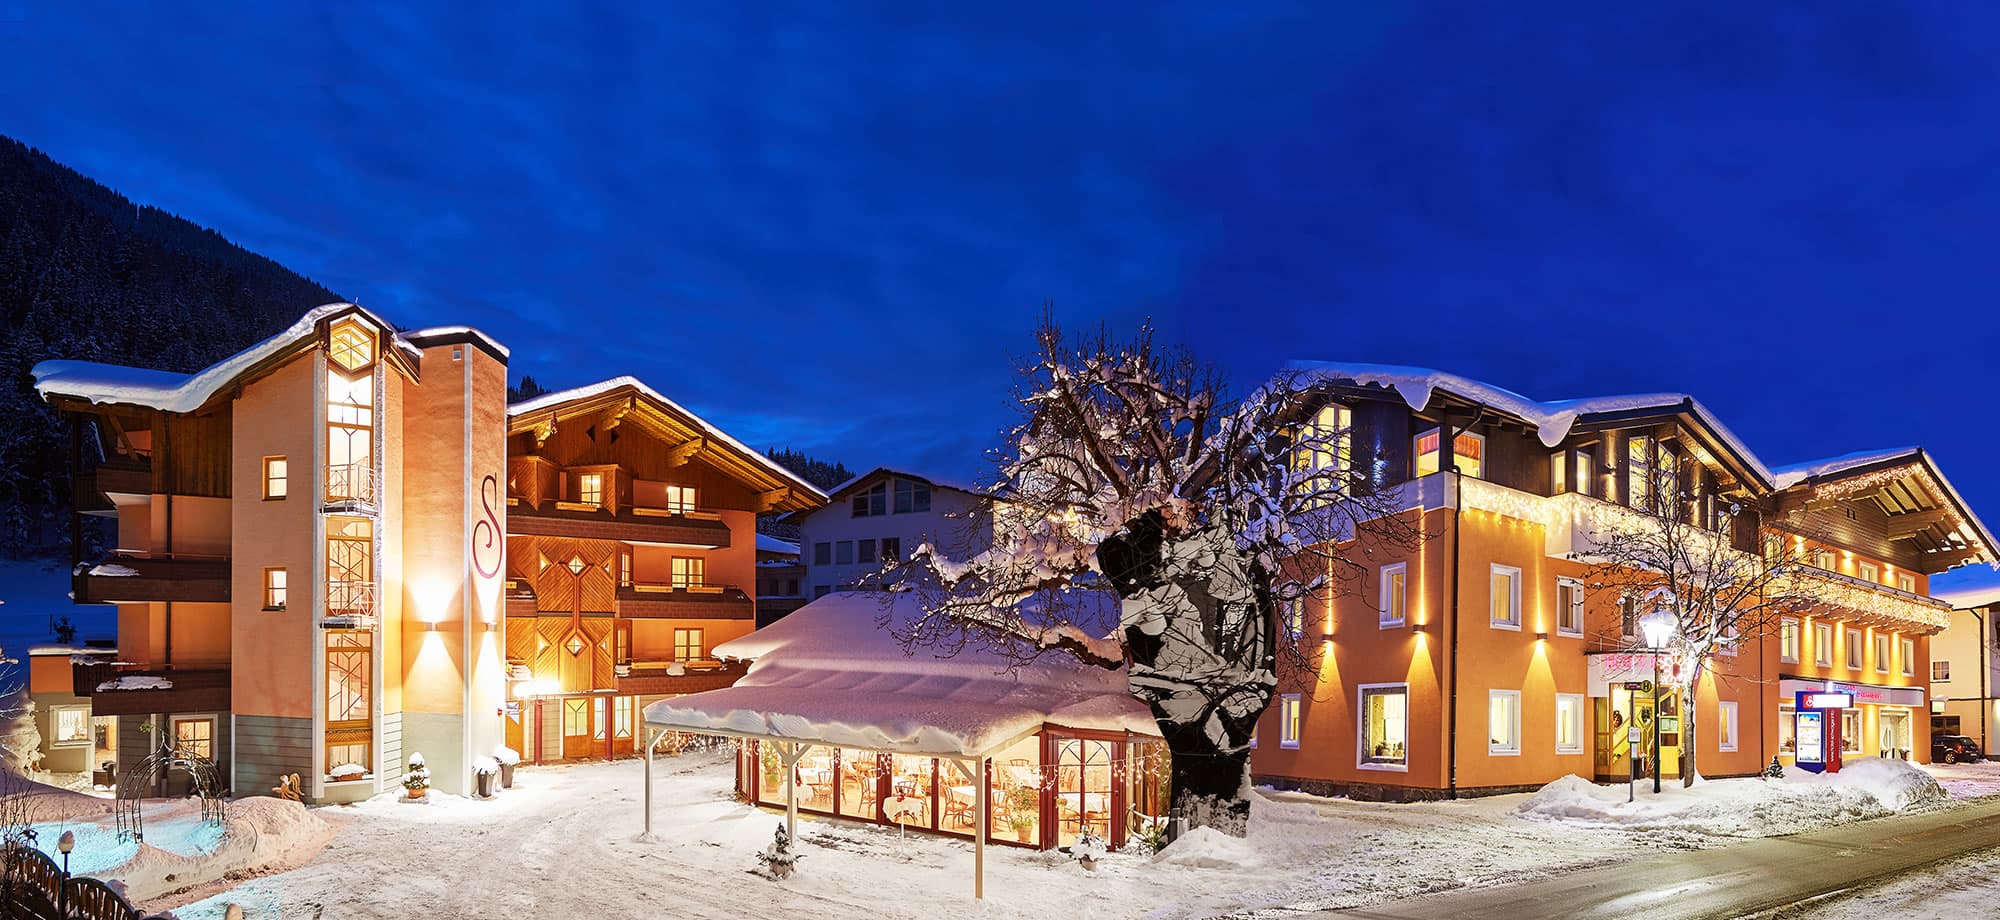 Hotel Schwaiger in Eben im Pongau in Top-Lage in Ski amadé